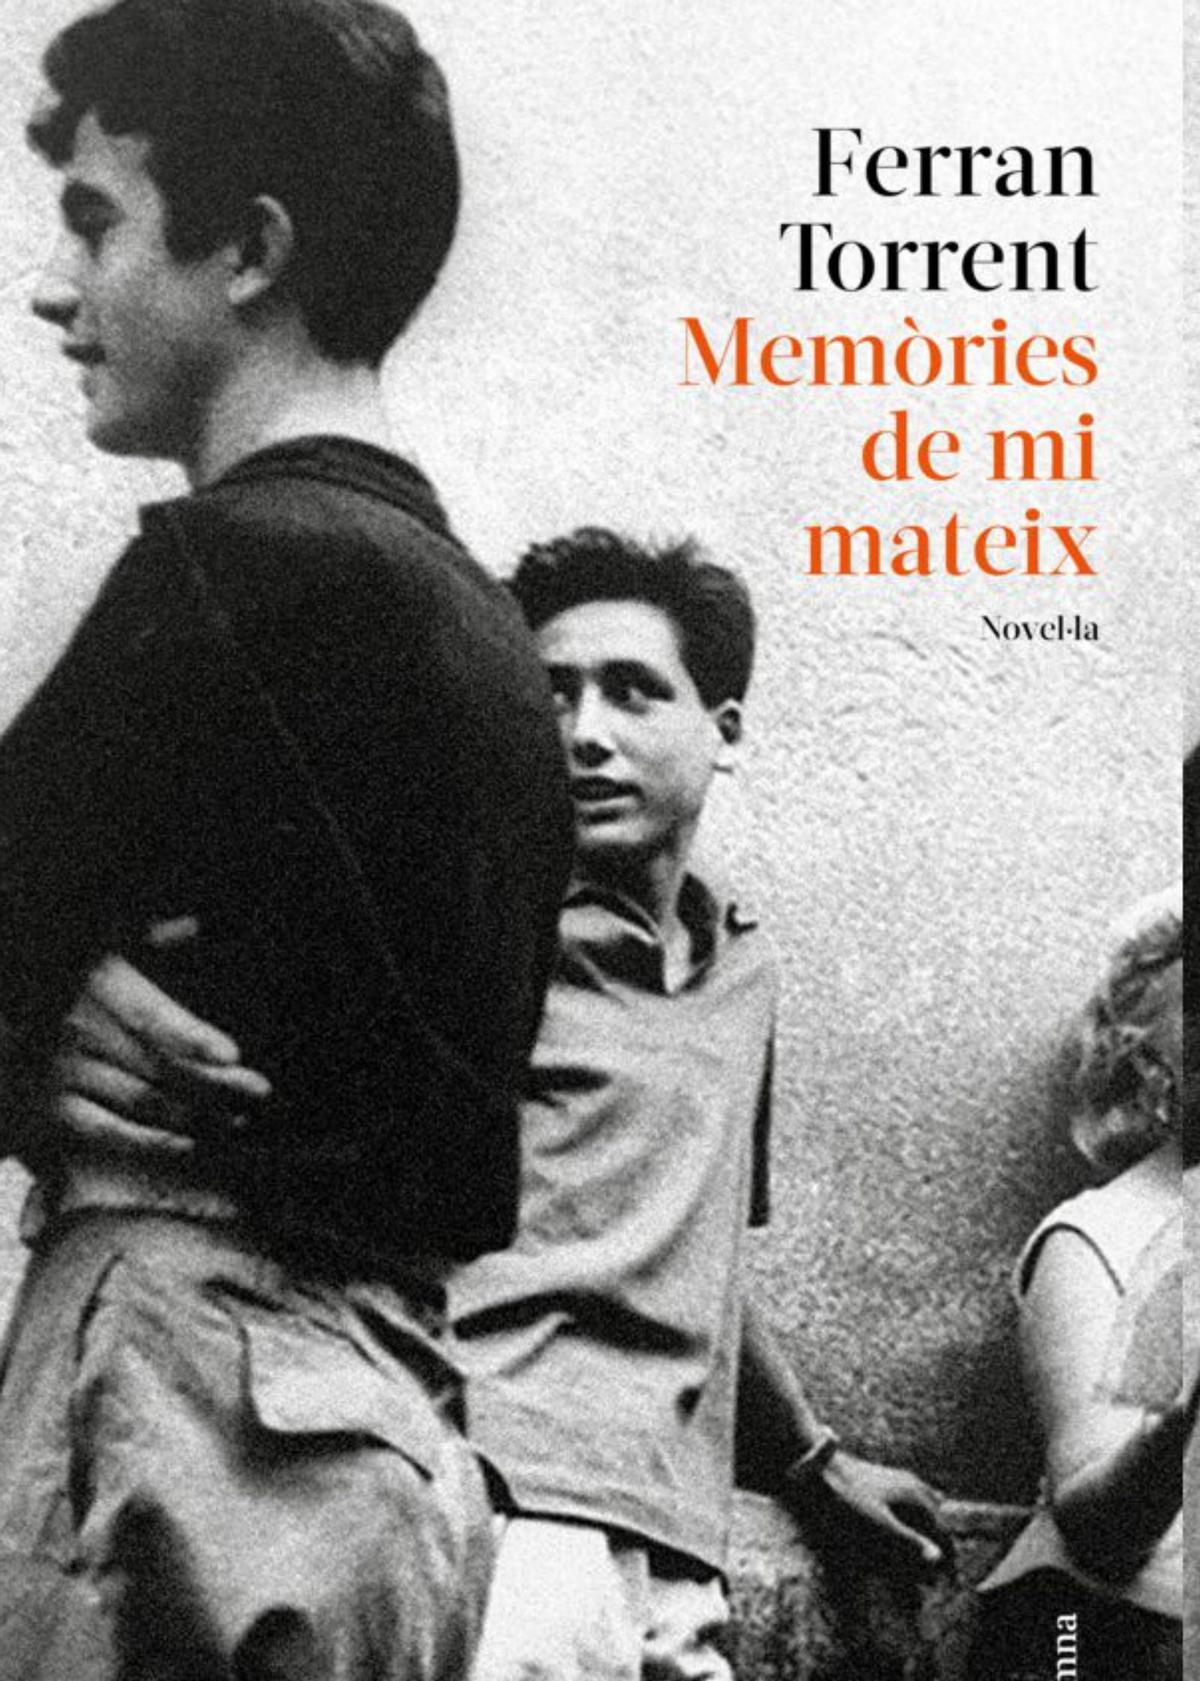 La nova novel·la de Ferran Torrent